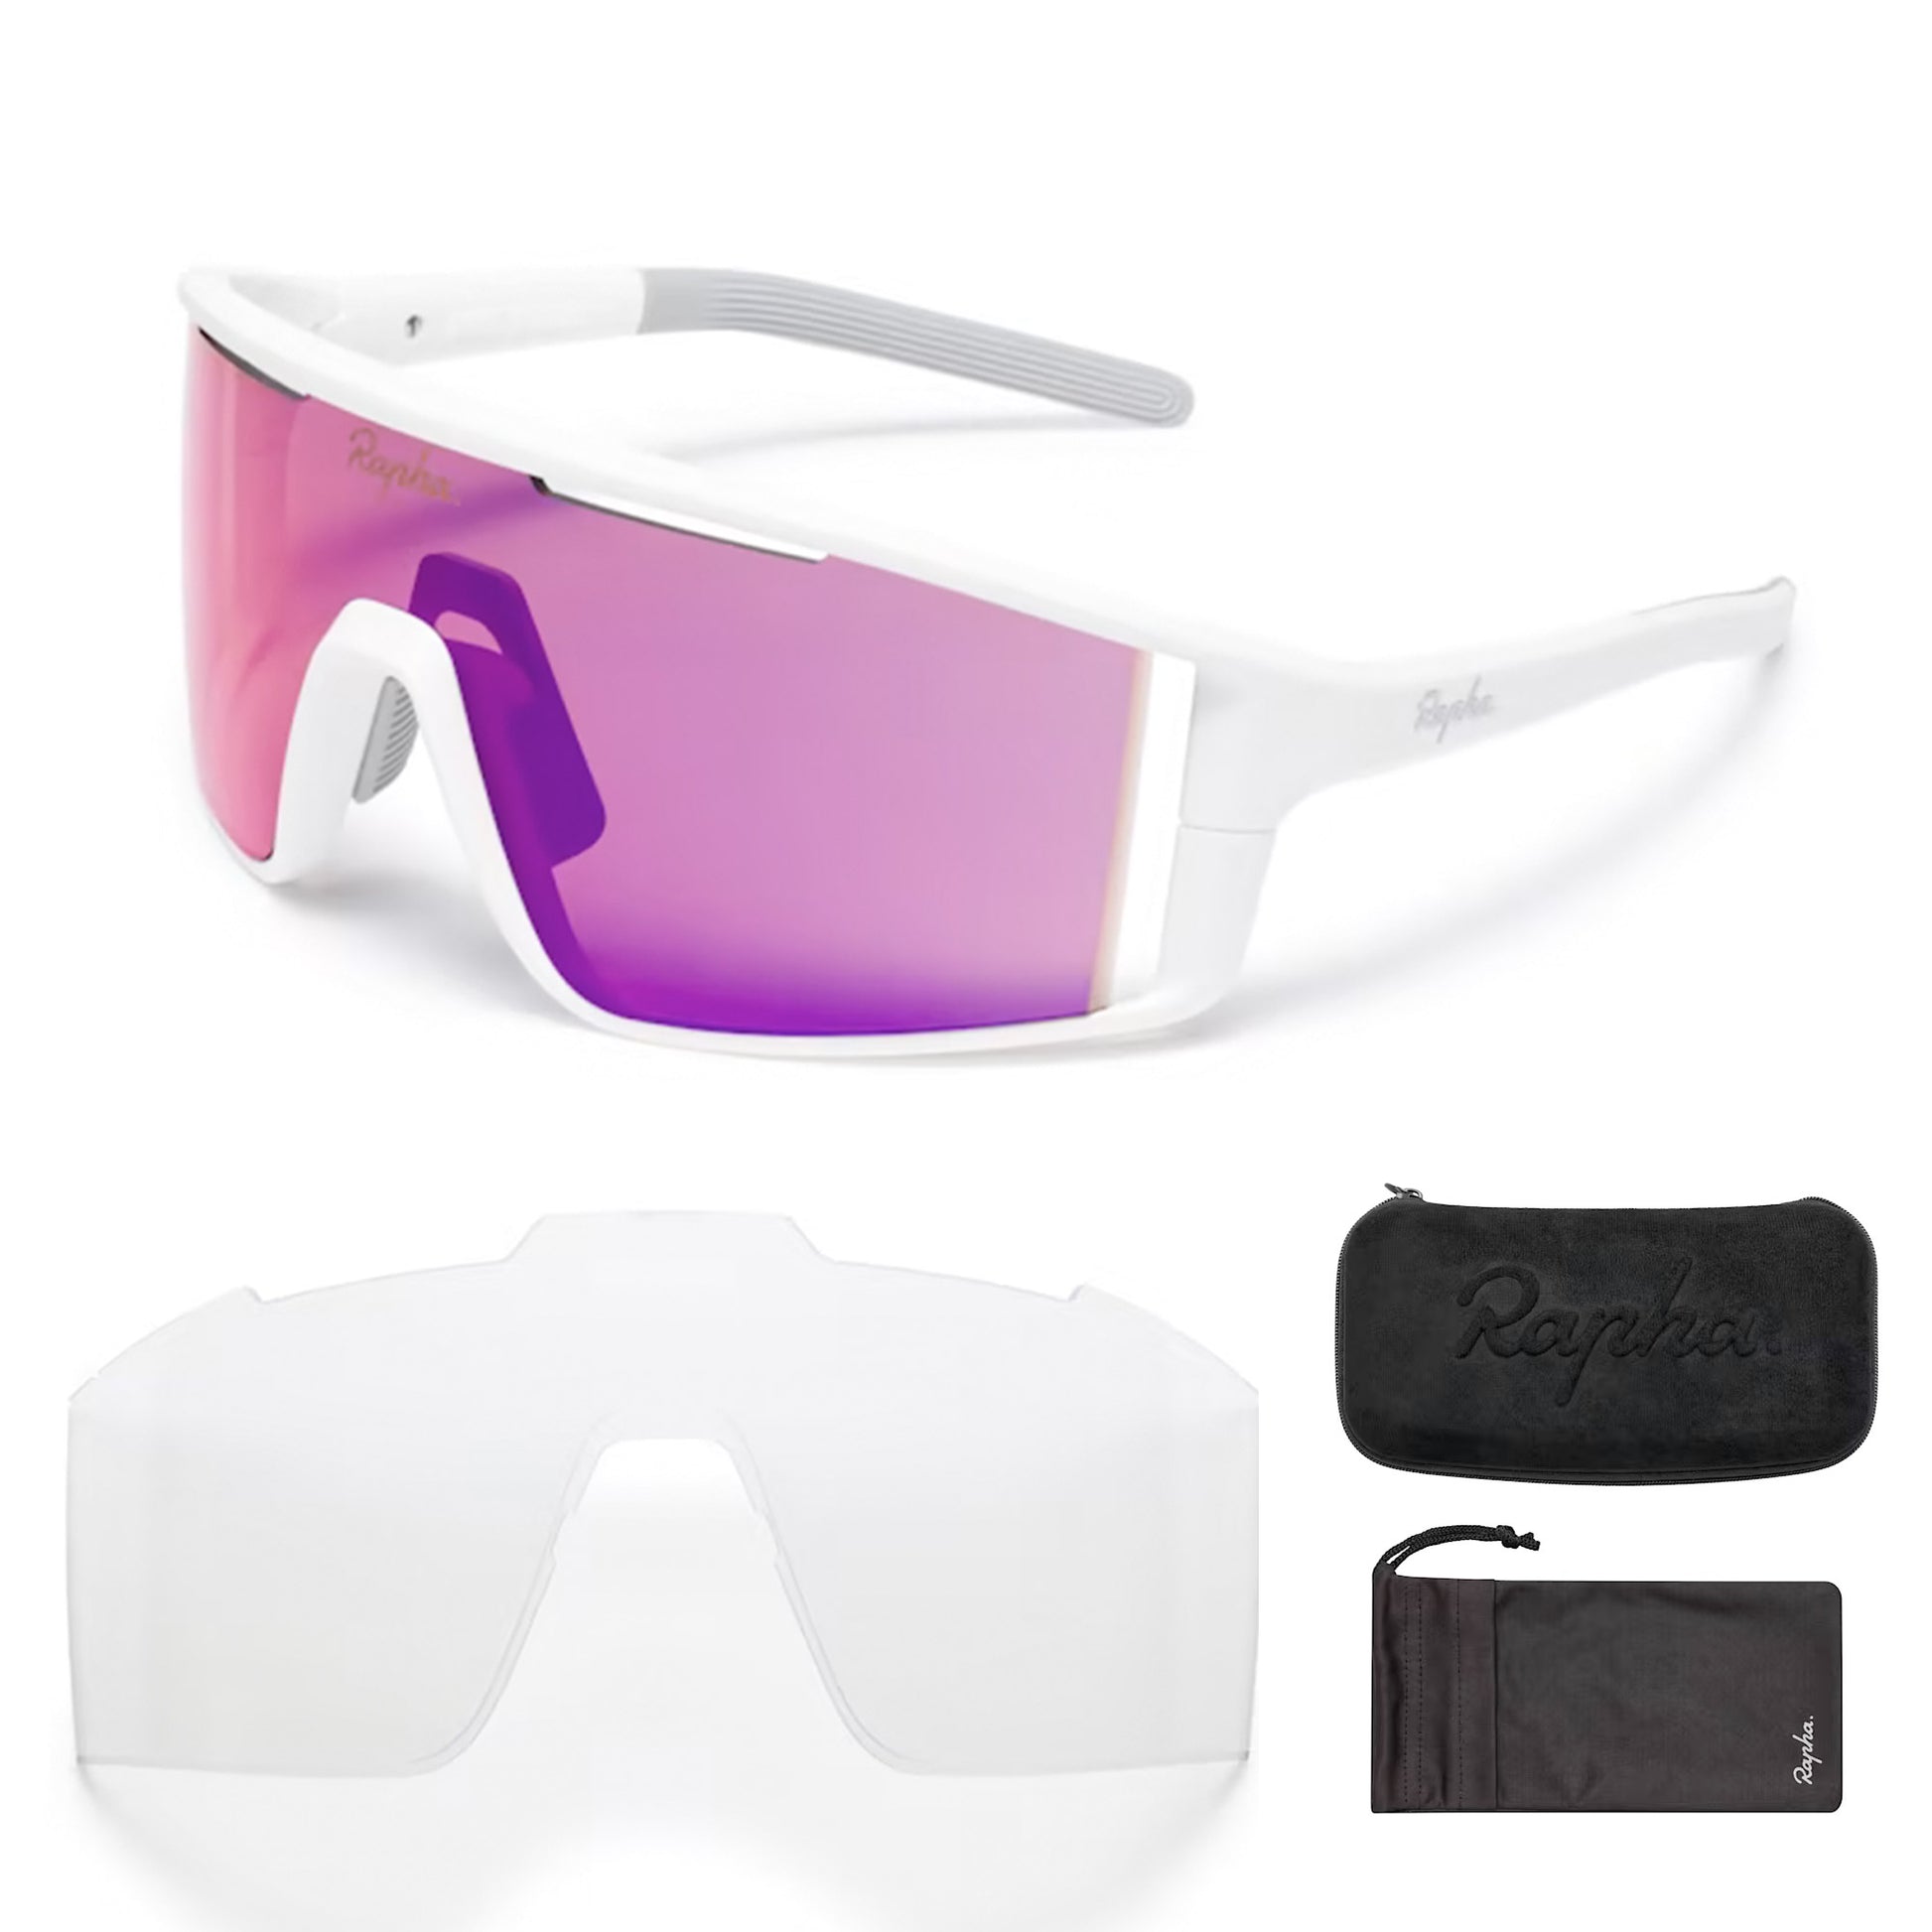 Rapha Pro Team Full Frame Sunglasses, White